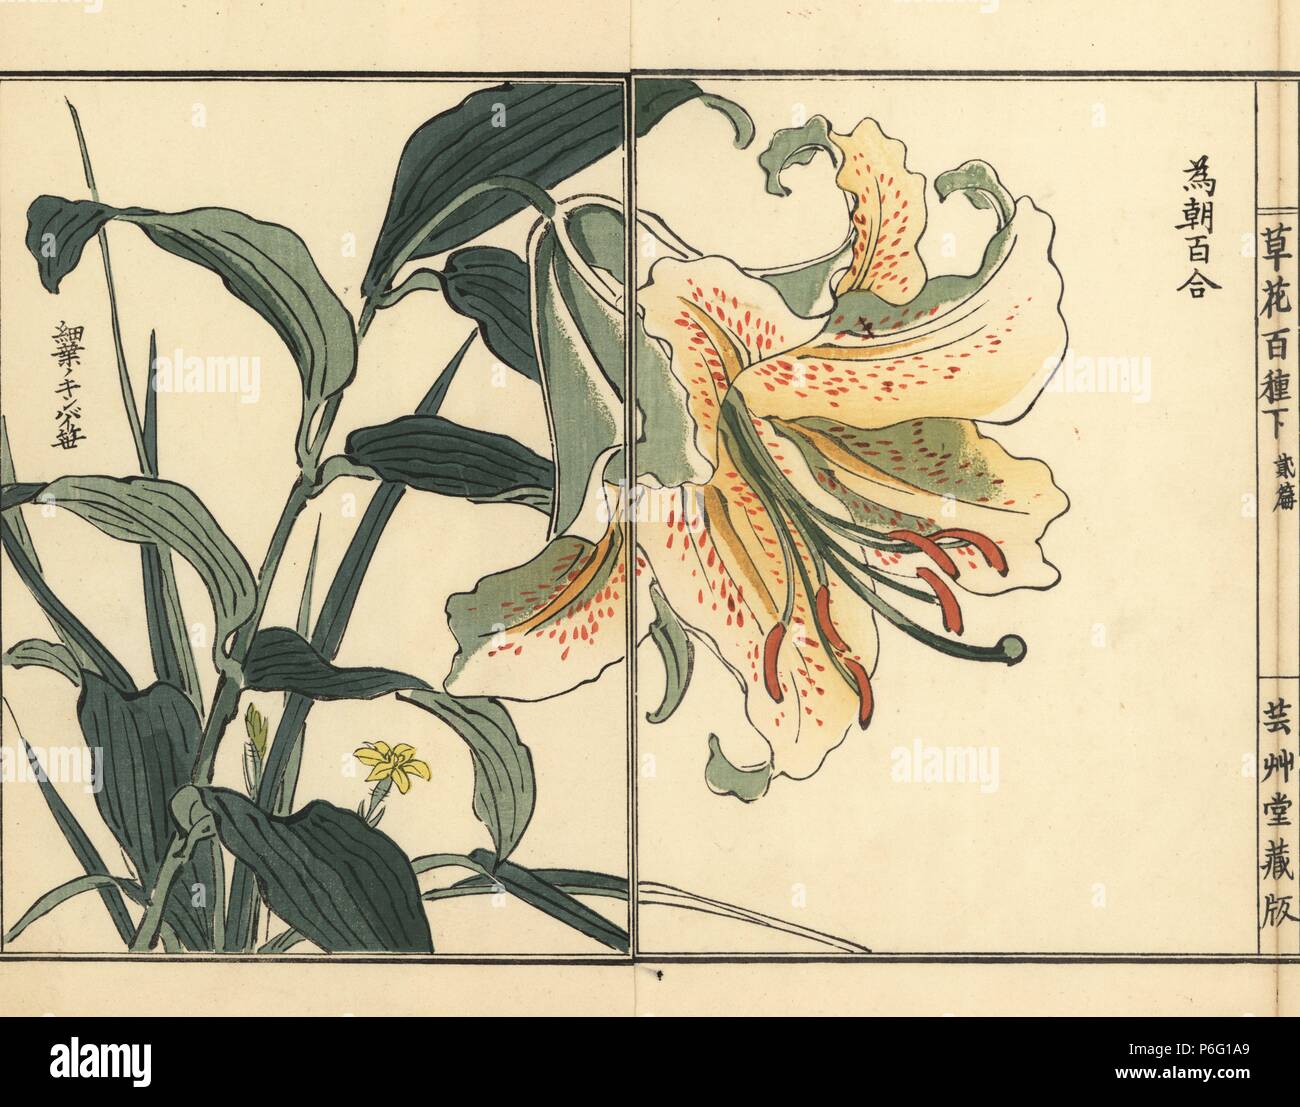 Tametomo yuri or golden rayed lily, Lilium auratum var. platyphyllum. Handcoloured woodblock print by Kono Bairei from Kusa Bana Hyakushu (One Hundred Varieties of Flowers), Tokyo, Yamada, 1901. Stock Photo